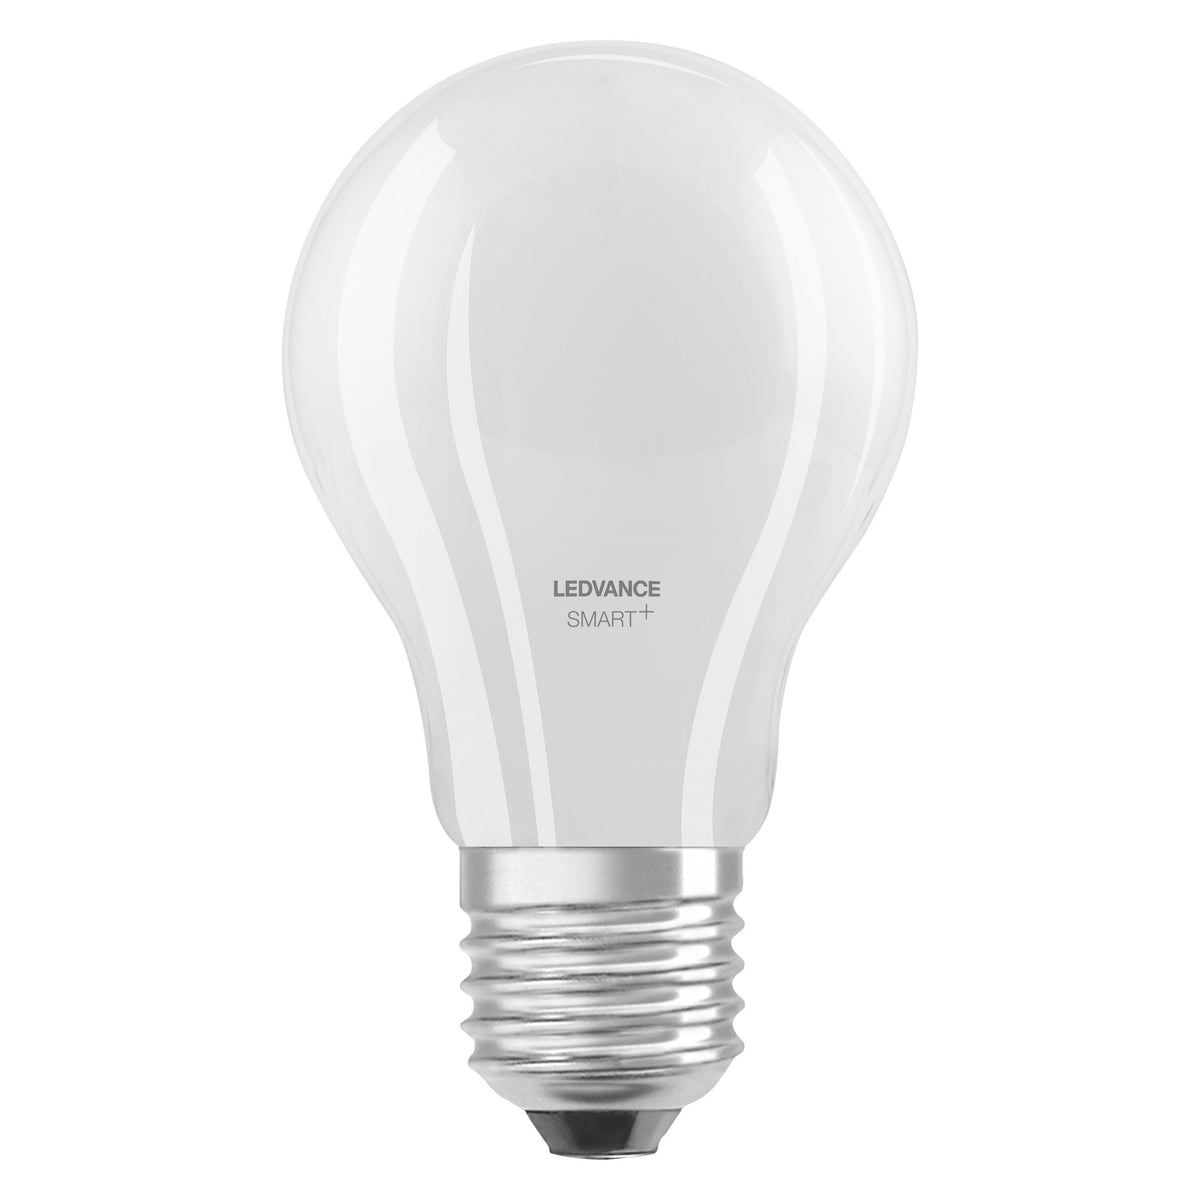 Lampada LED LEDVANCE Smart con tecnologia WiFi, attacco E27, dimmerabile, colore della luce variabile (2700-6500K), sostituisce le lampade a incandescenza da 60 W, SMART+ WiFi Classic Tunable White, confezione da 1